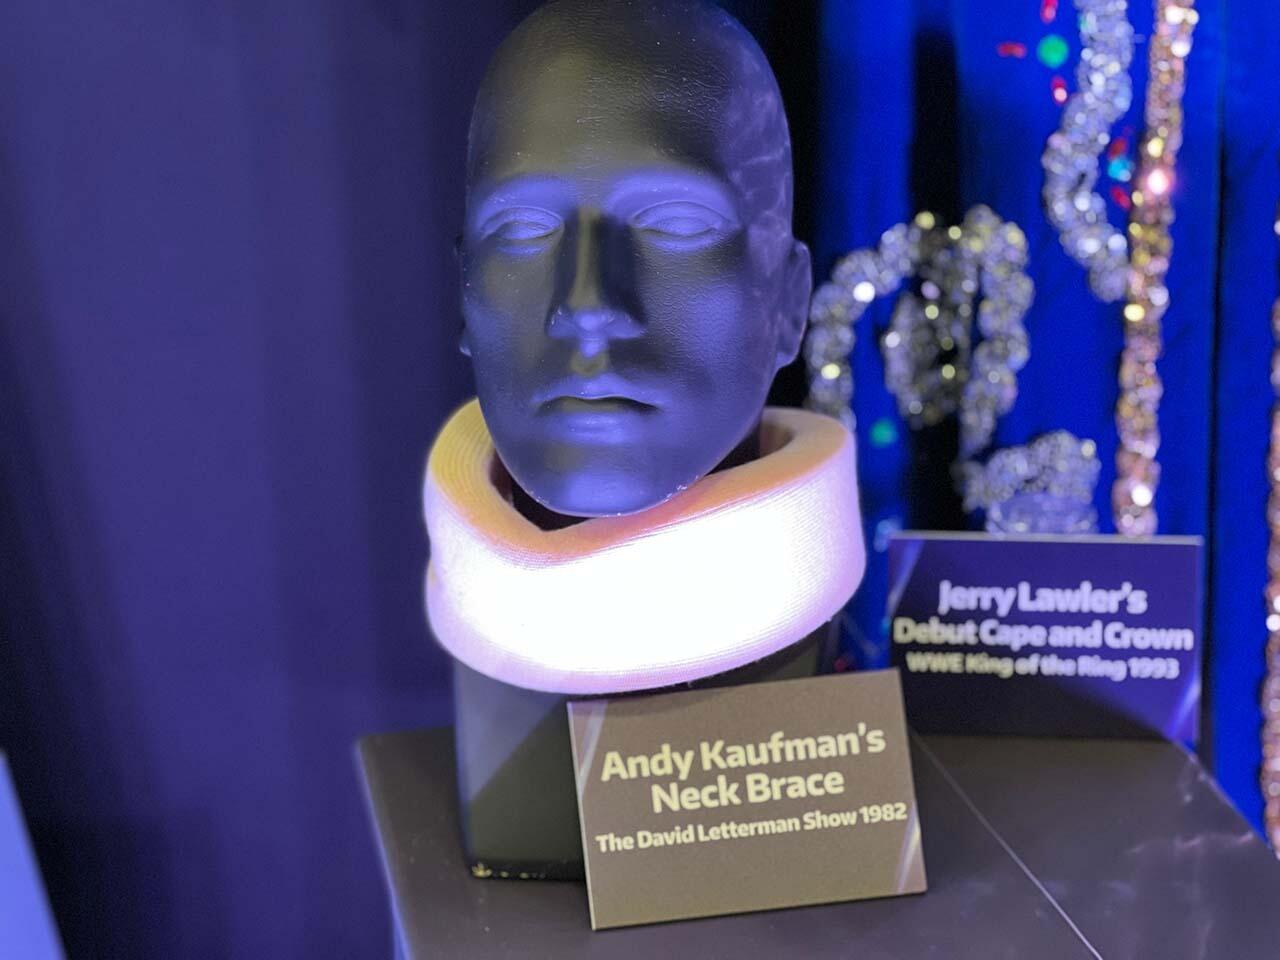 Andy Kaufman's neck brace